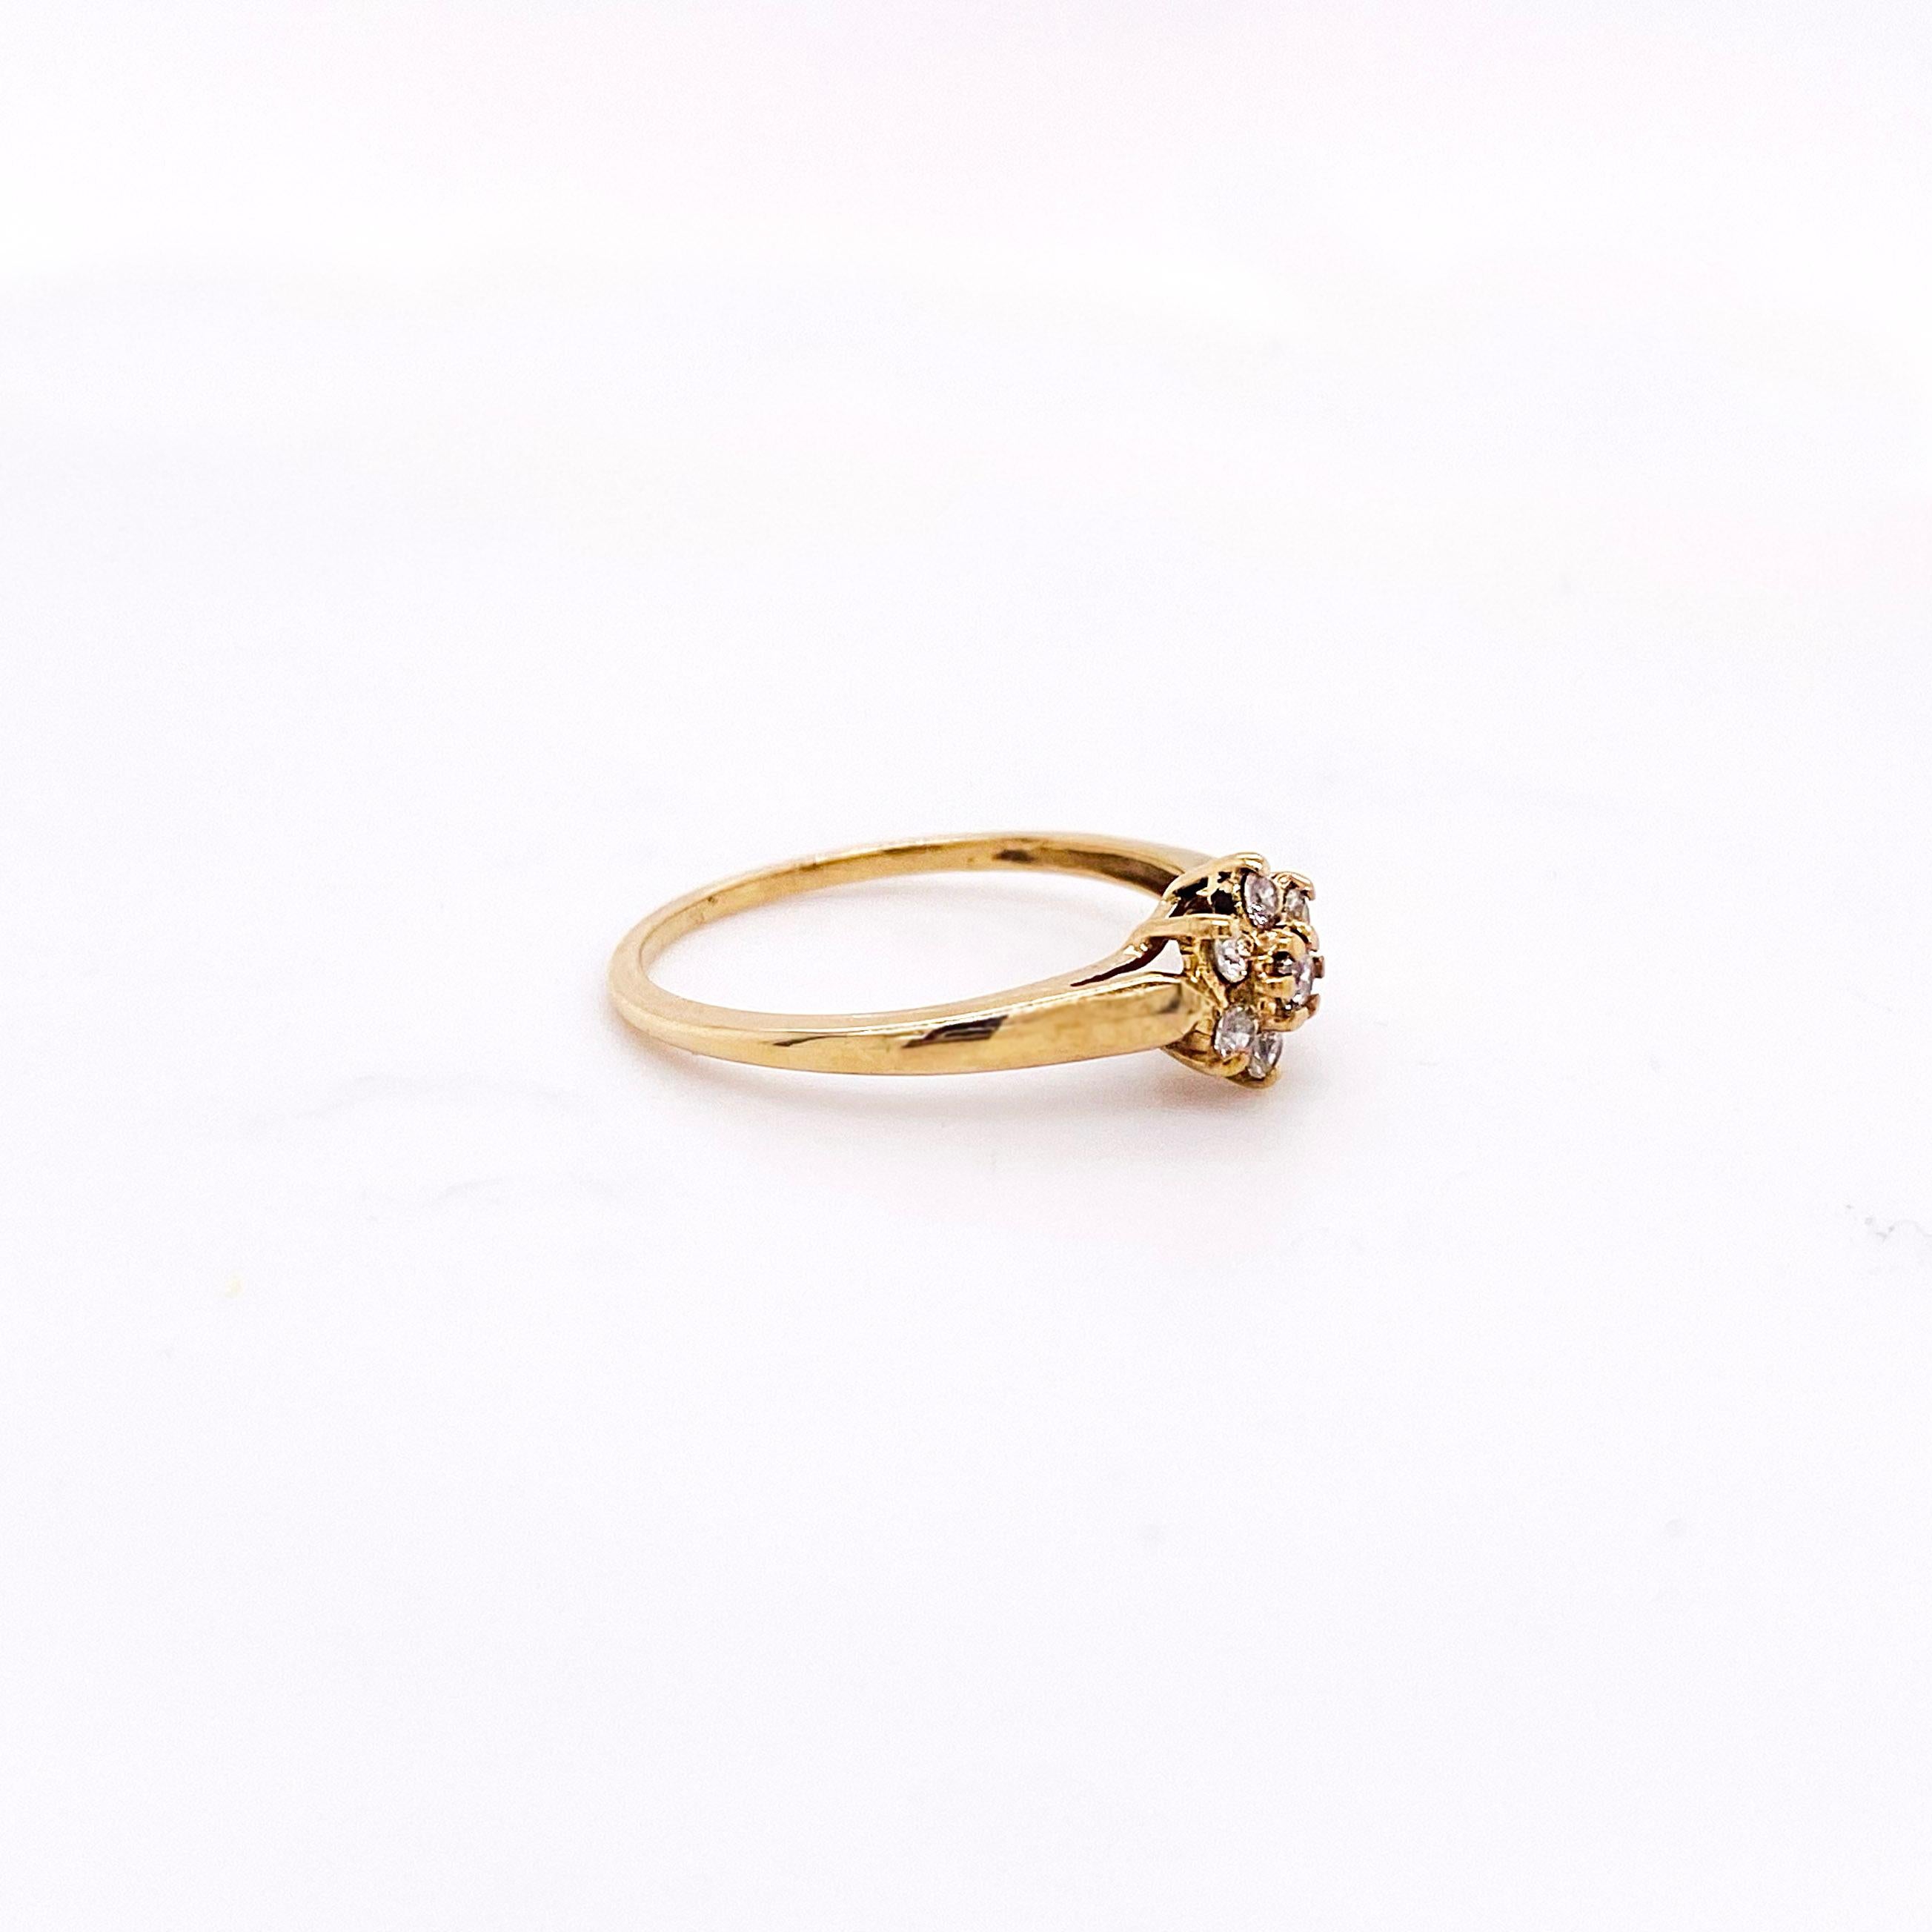 10k gold flower ring